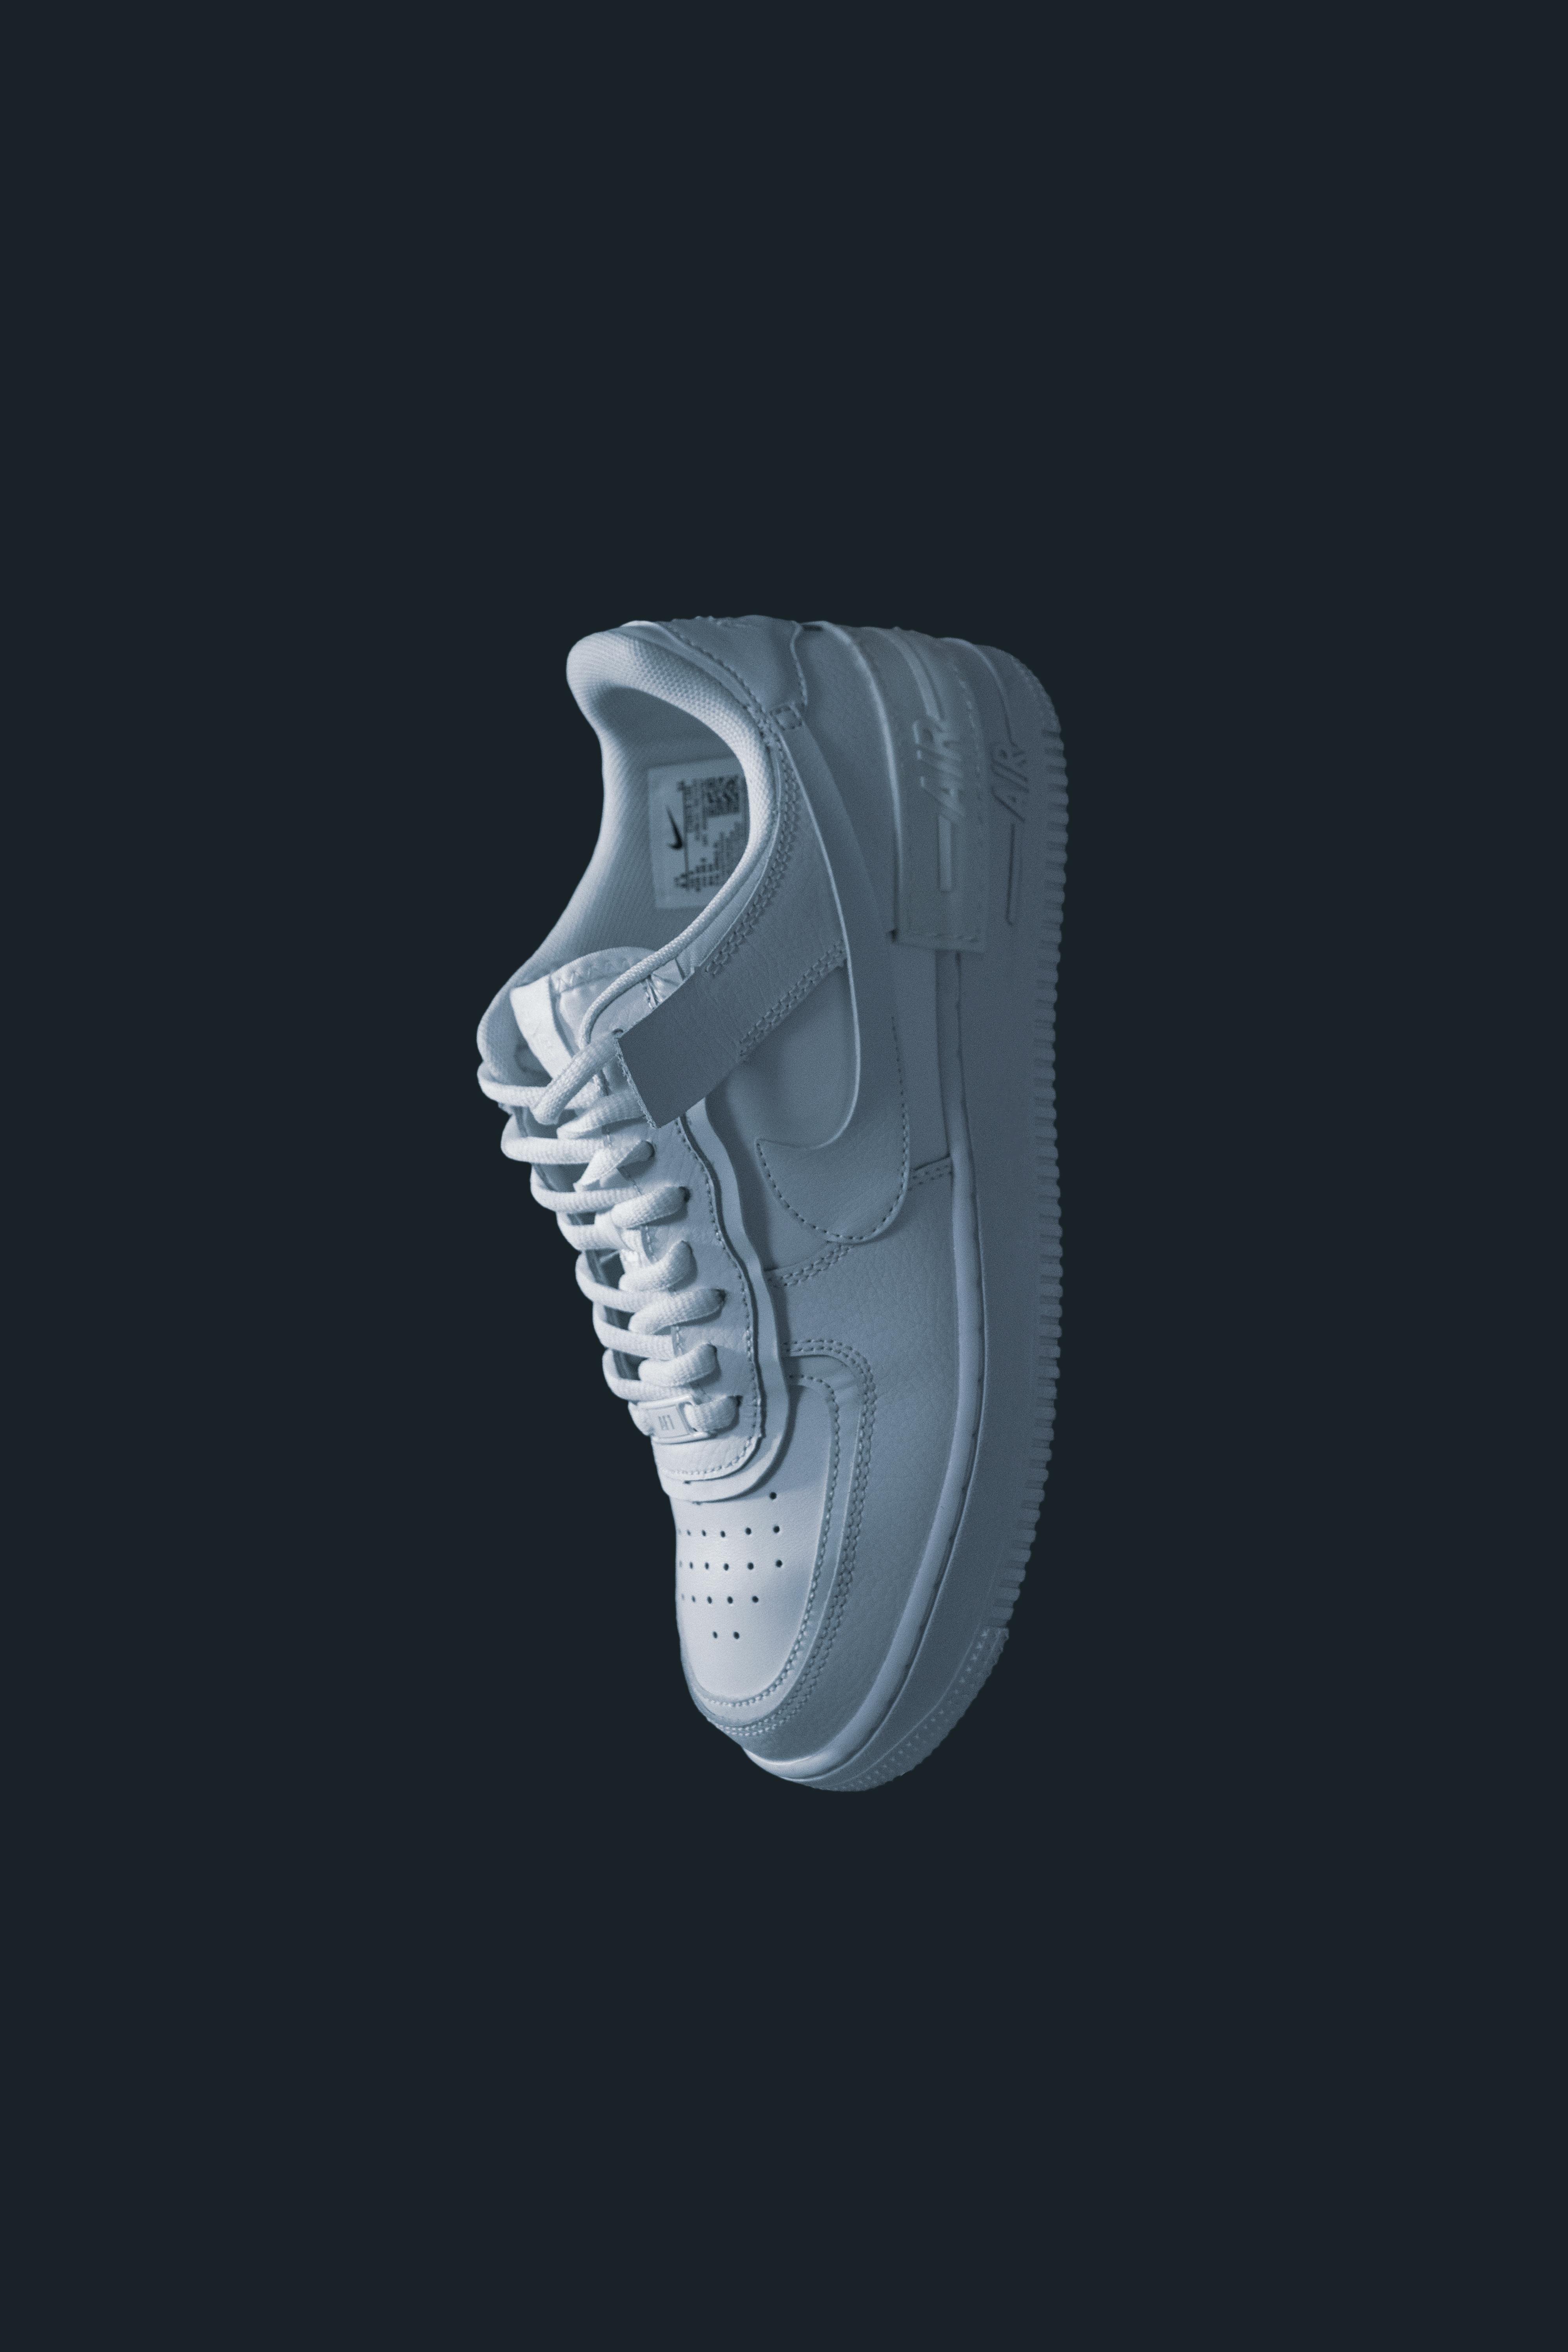 a white nike shoe